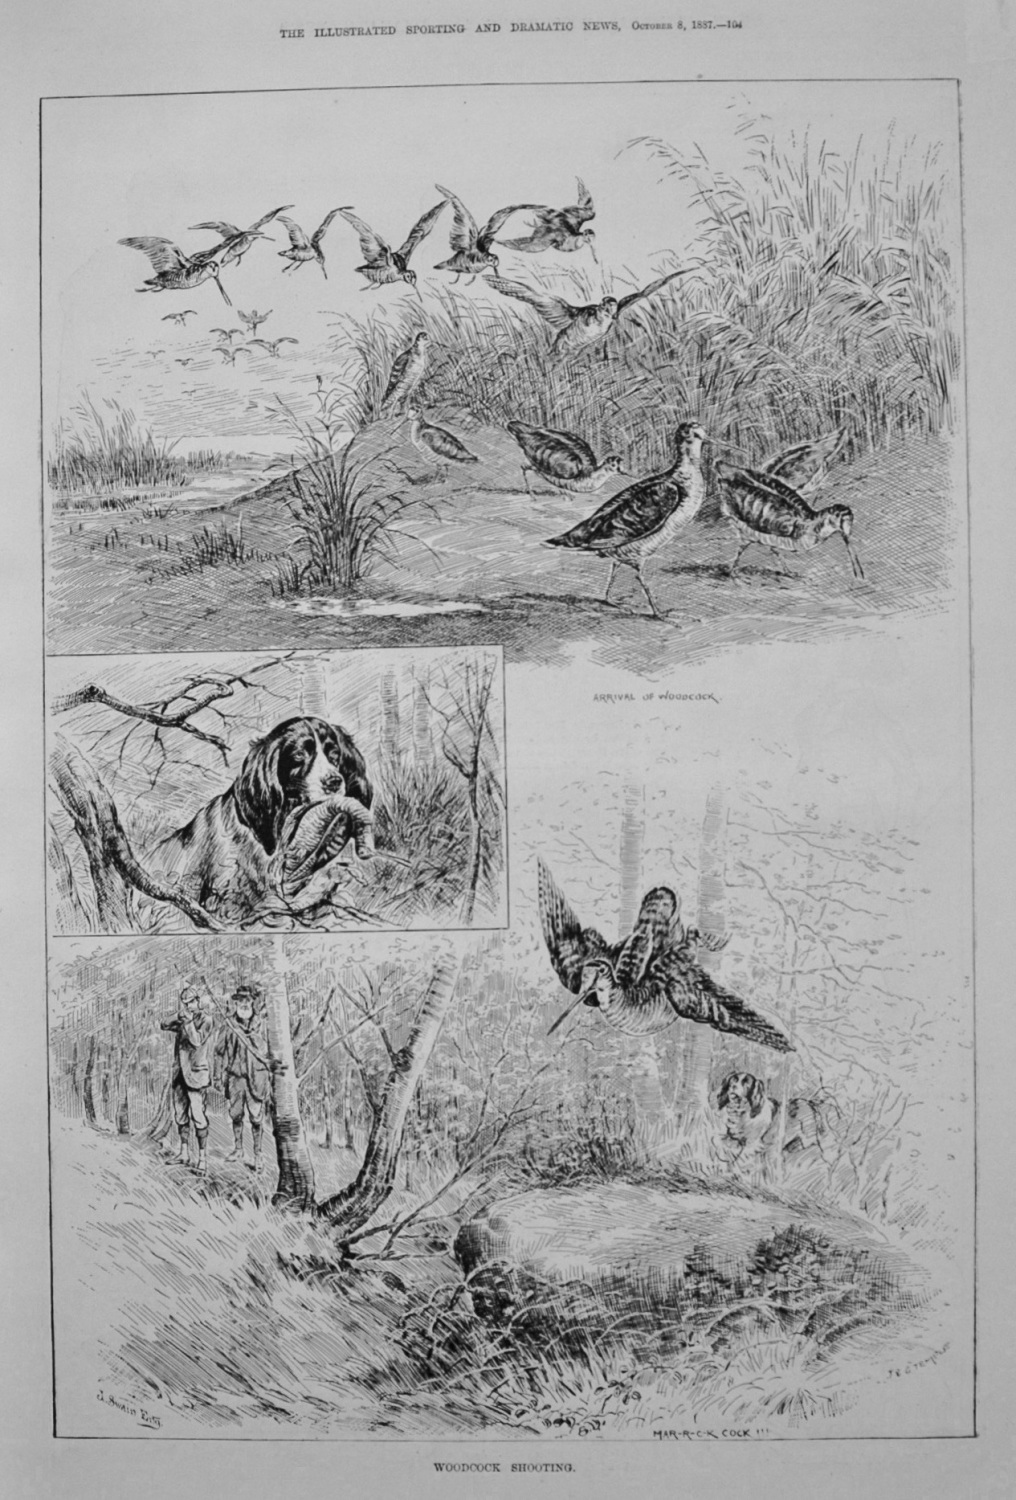 Woodcock Shooting. 1887